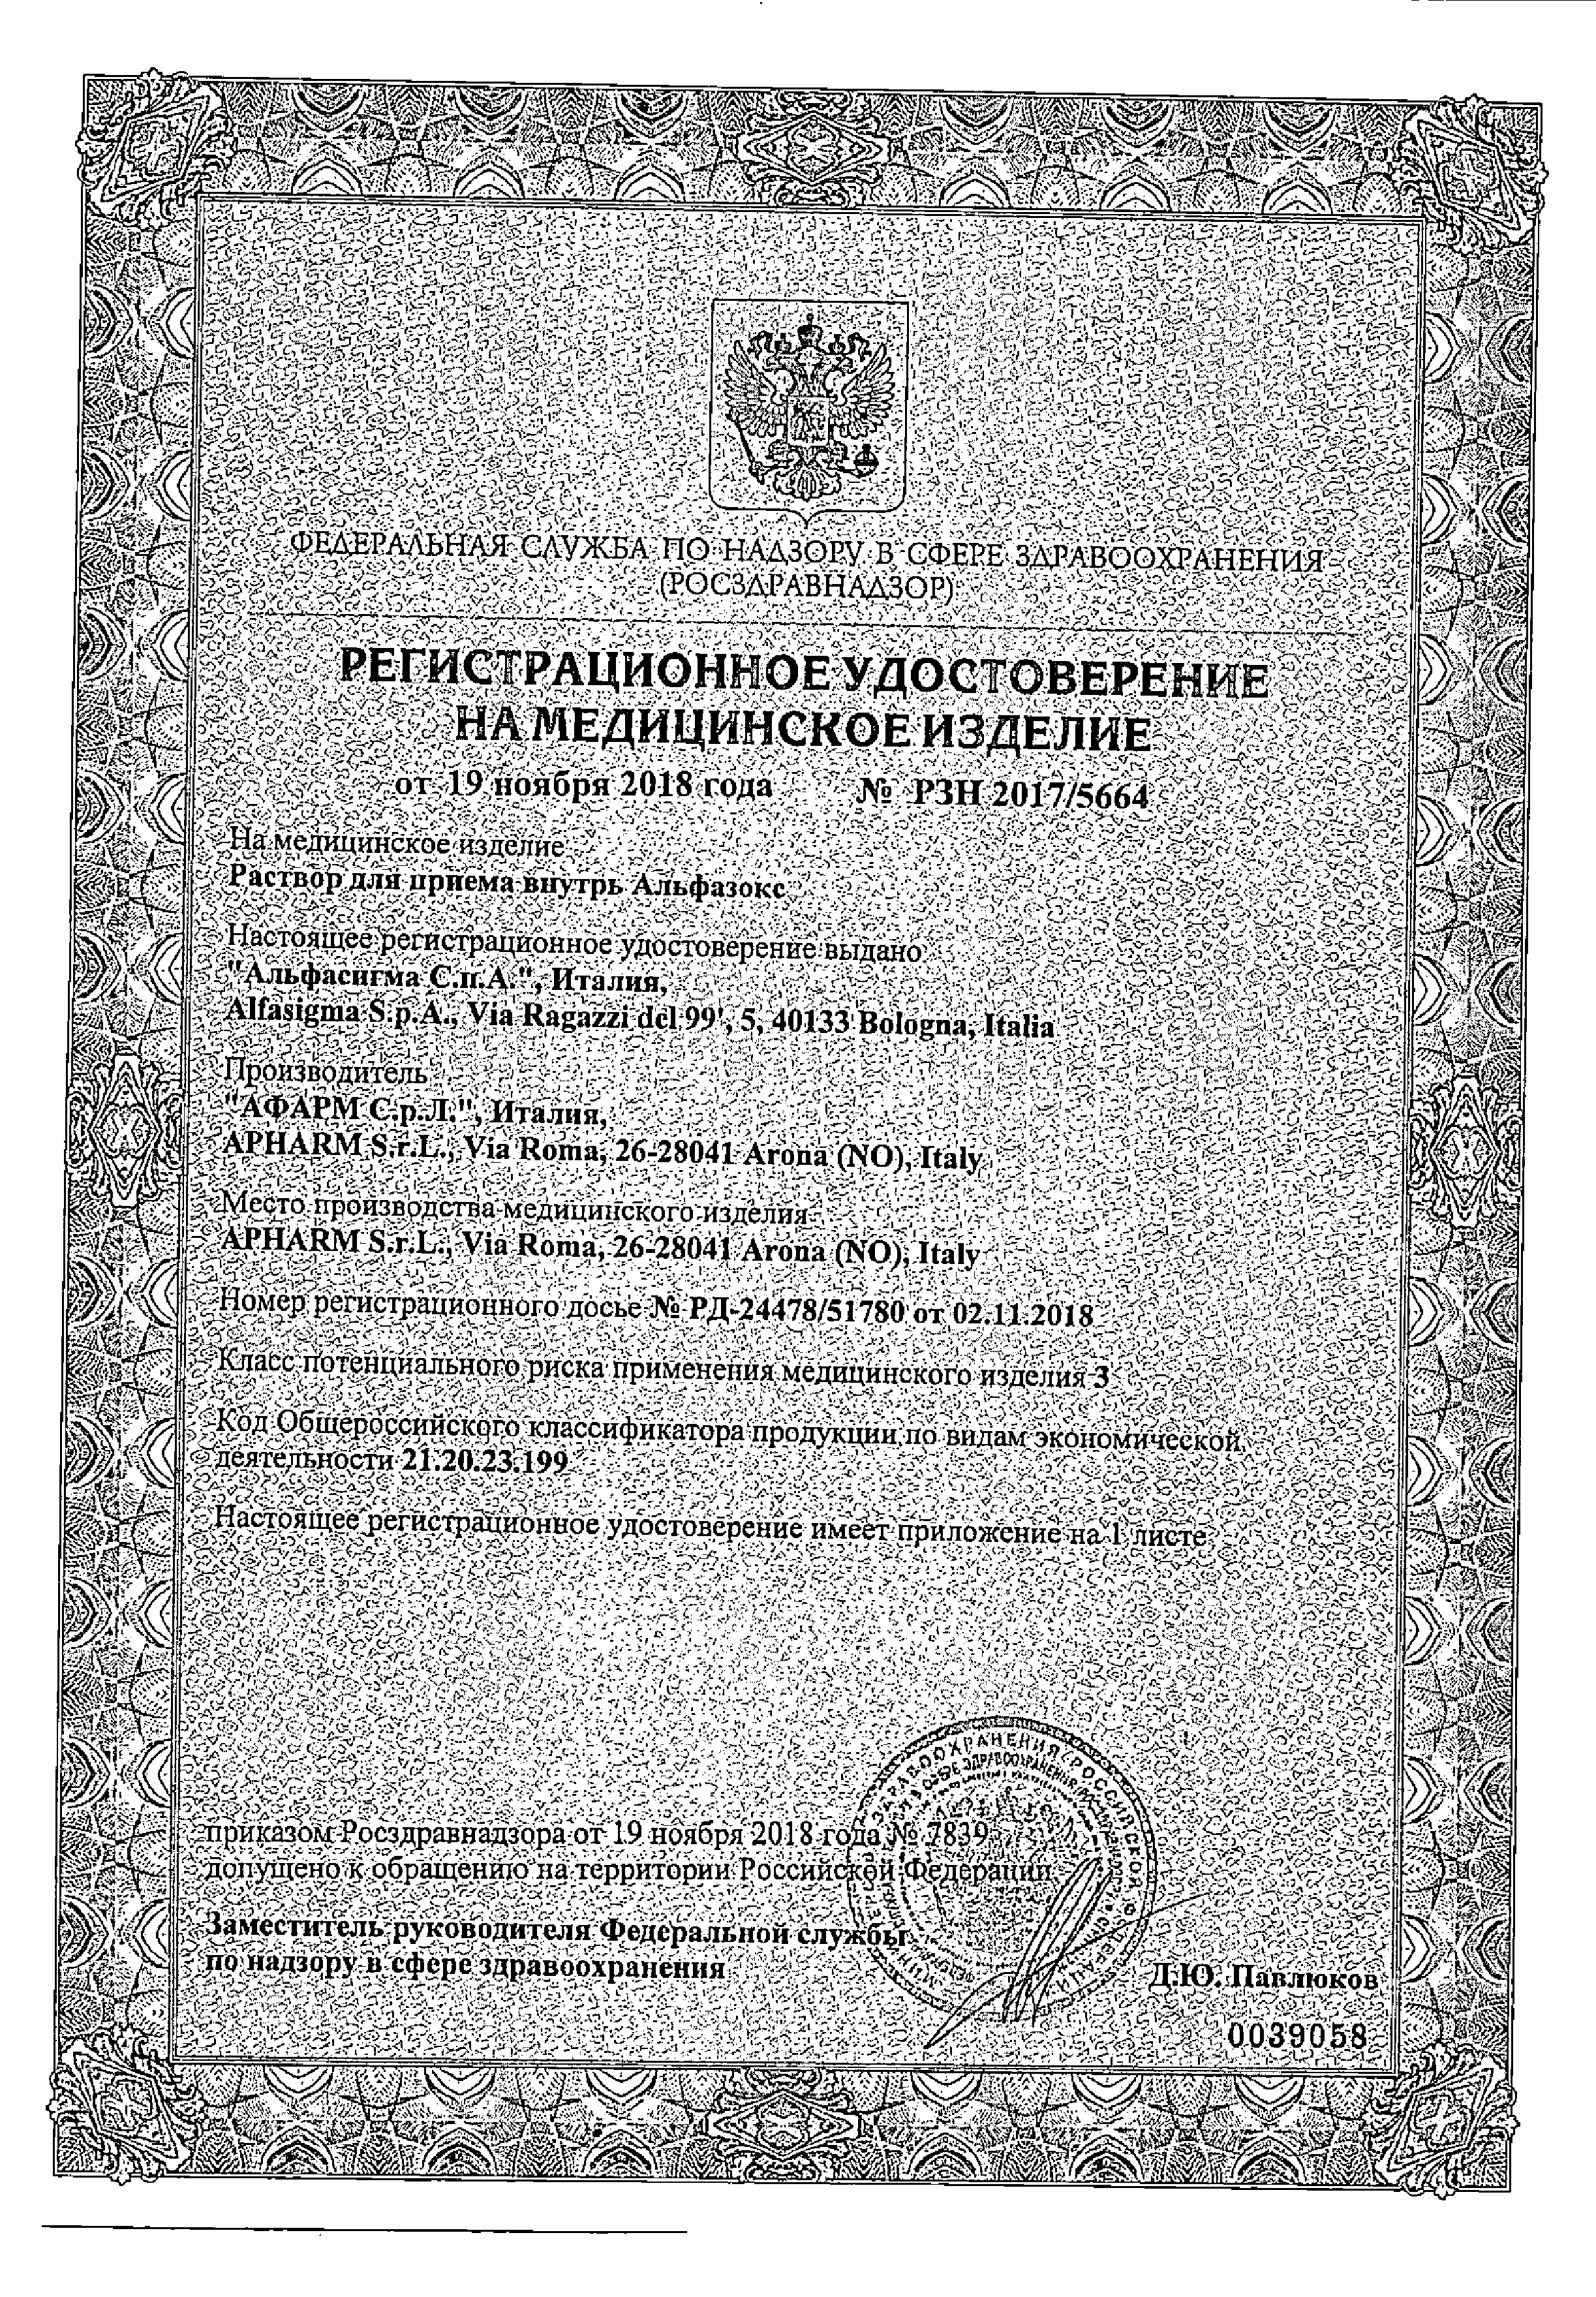 Альфазокс сертификат